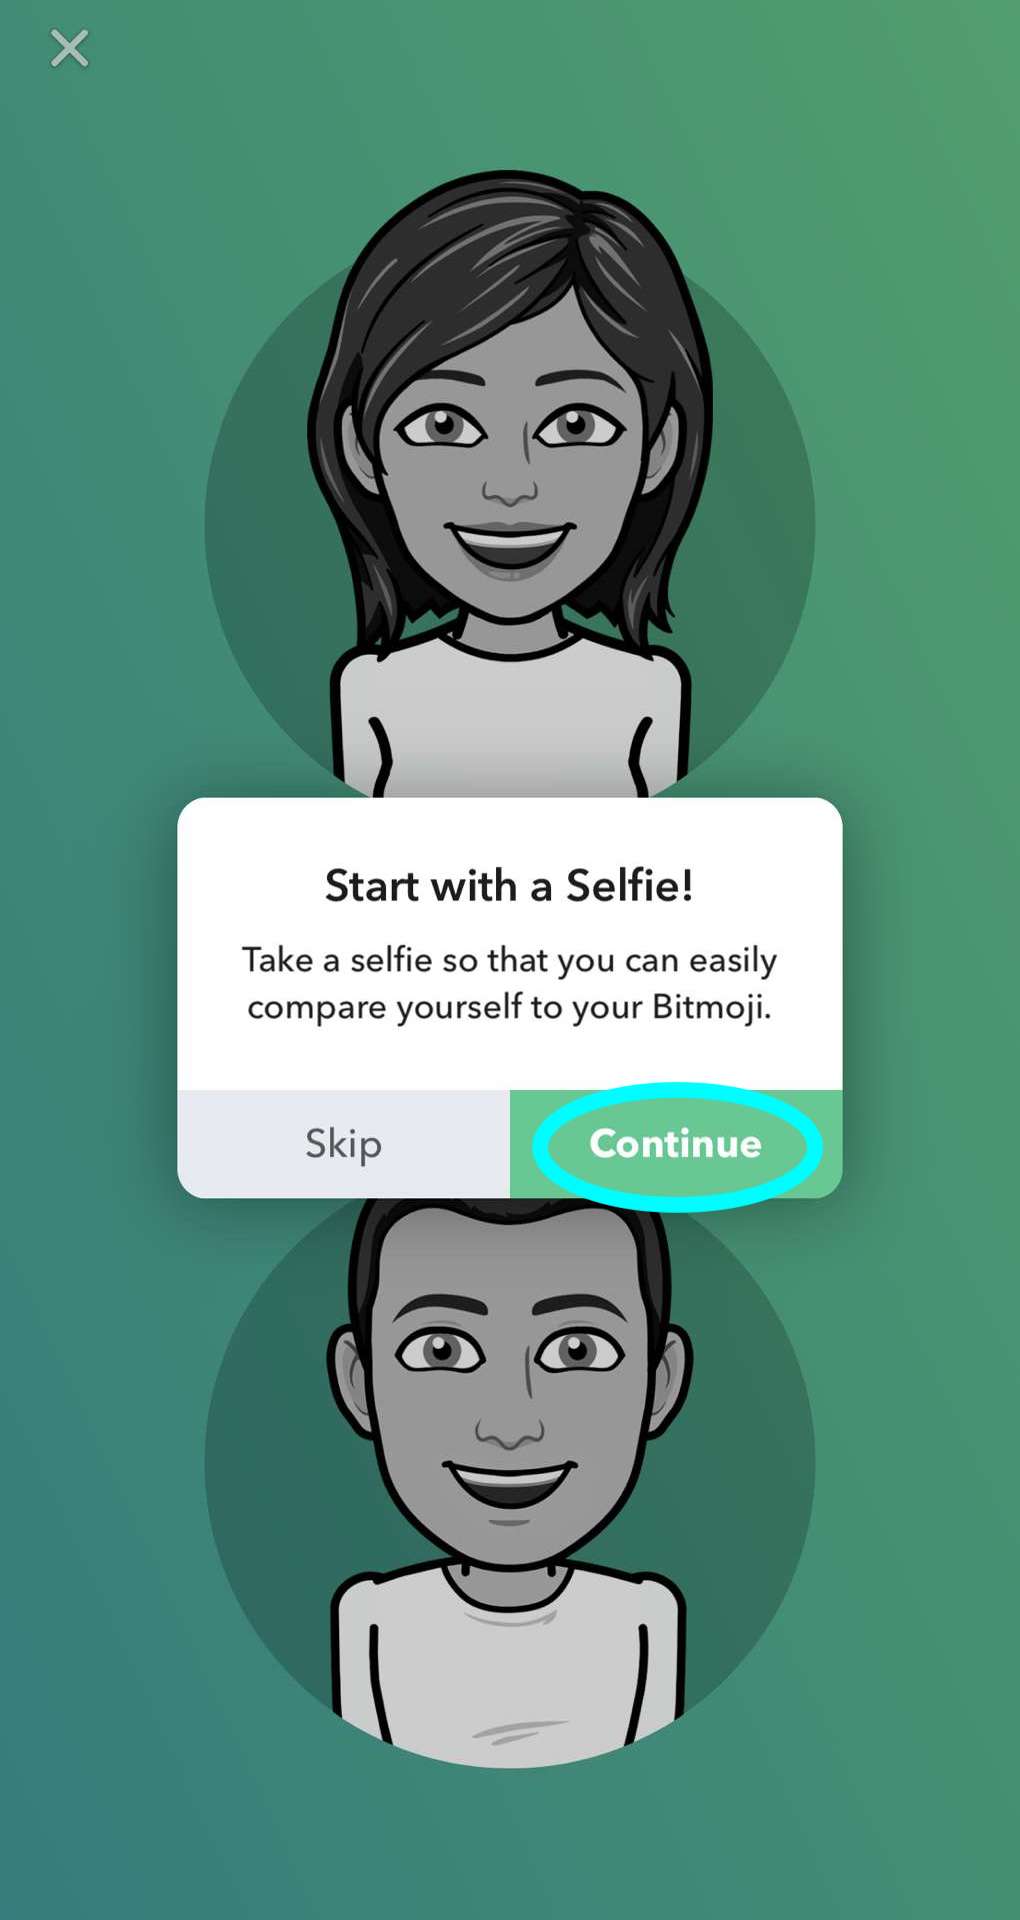 une fenêtre contextuelle invitant l'utilisateur à commencer la création d'un avatar en prenant un selfie, le bouton pour continuer avec le selfie est mis en évidence